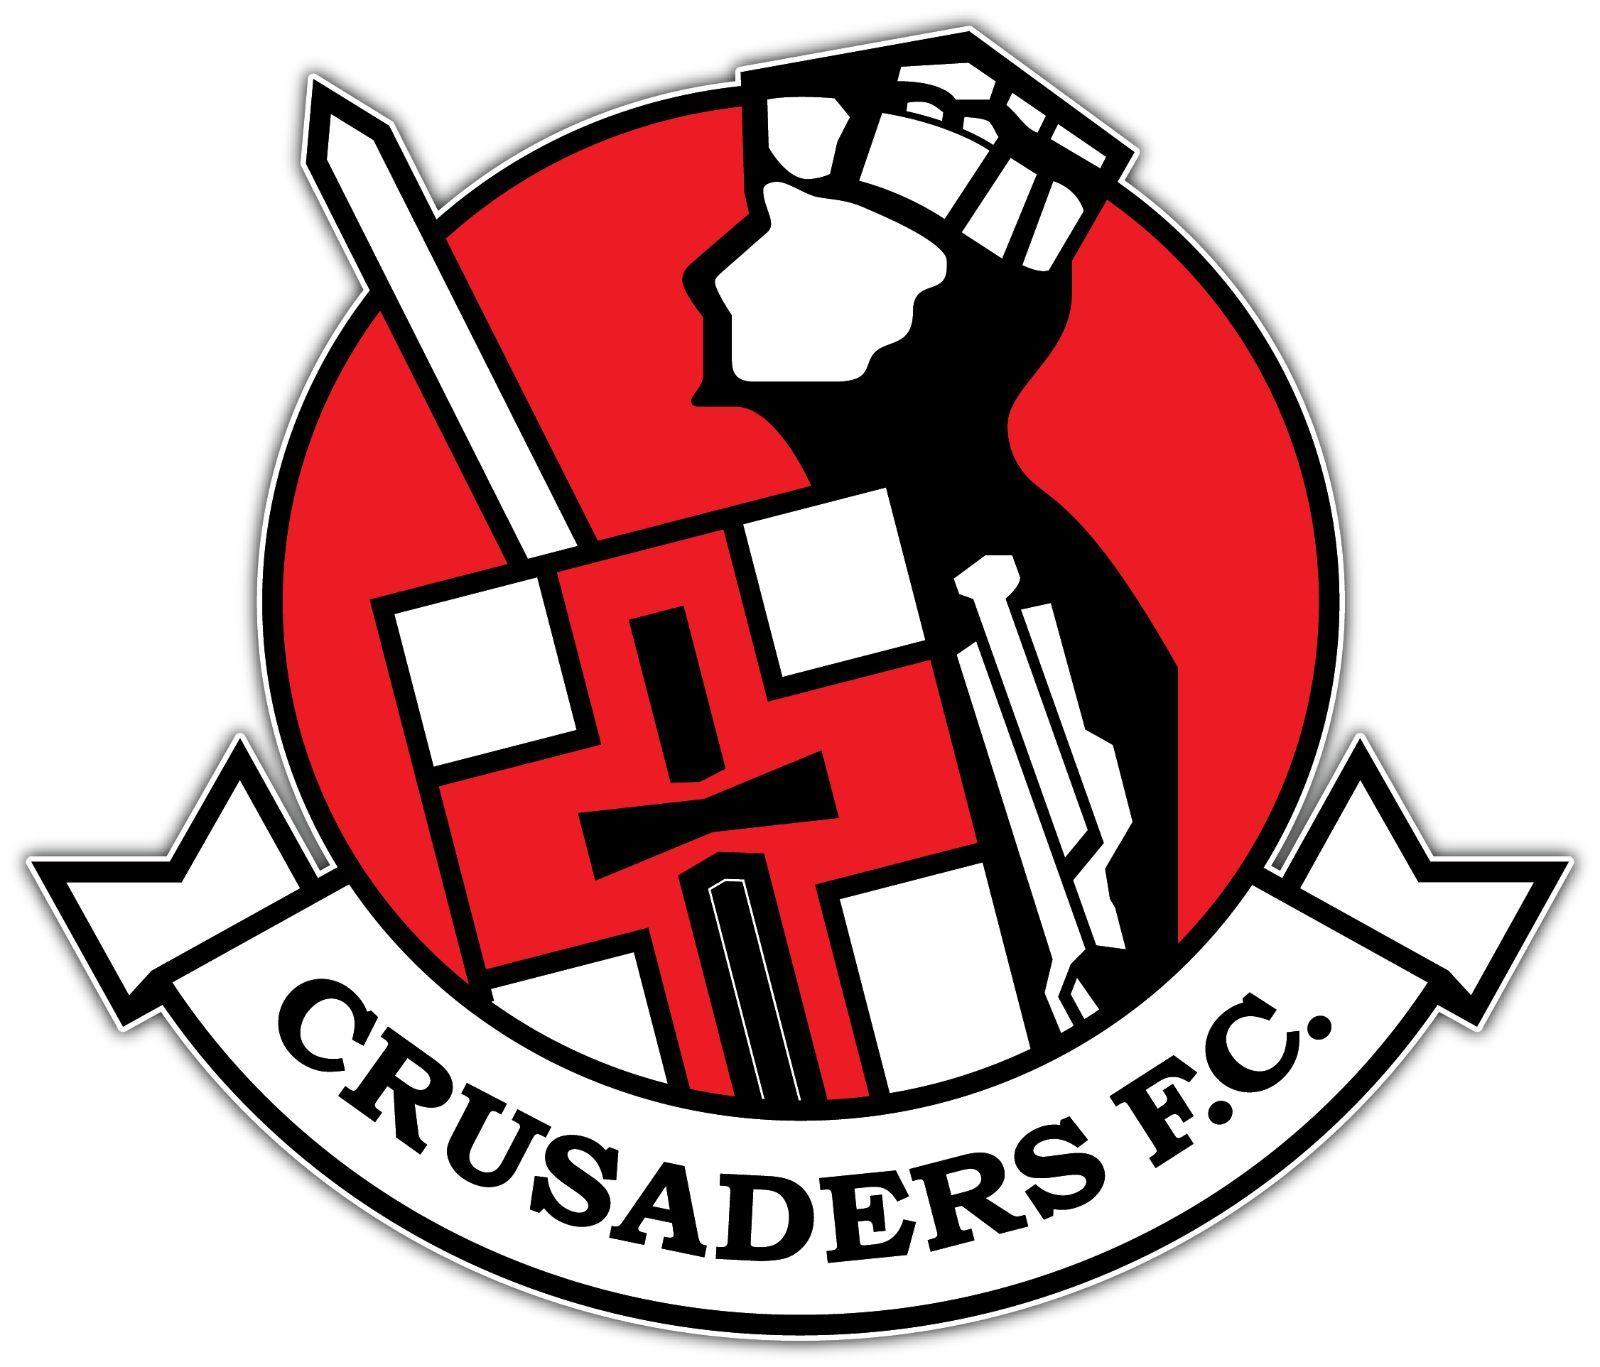 Crusaders Soccer Logo - $2.99 Fc Ireland Football Soccer Car Bumper Sticker